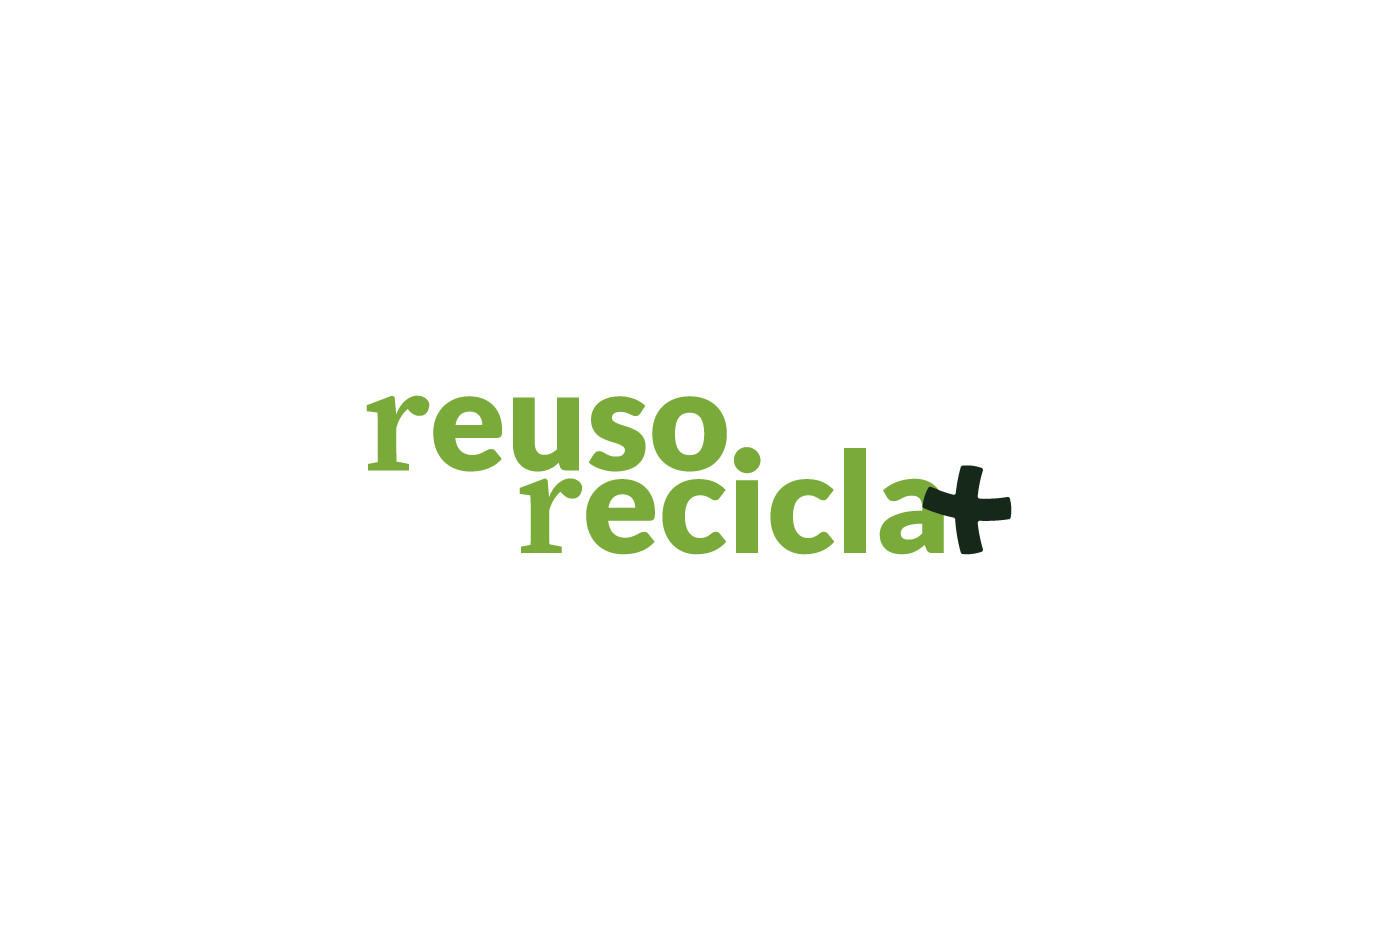 Reuso Recicla+